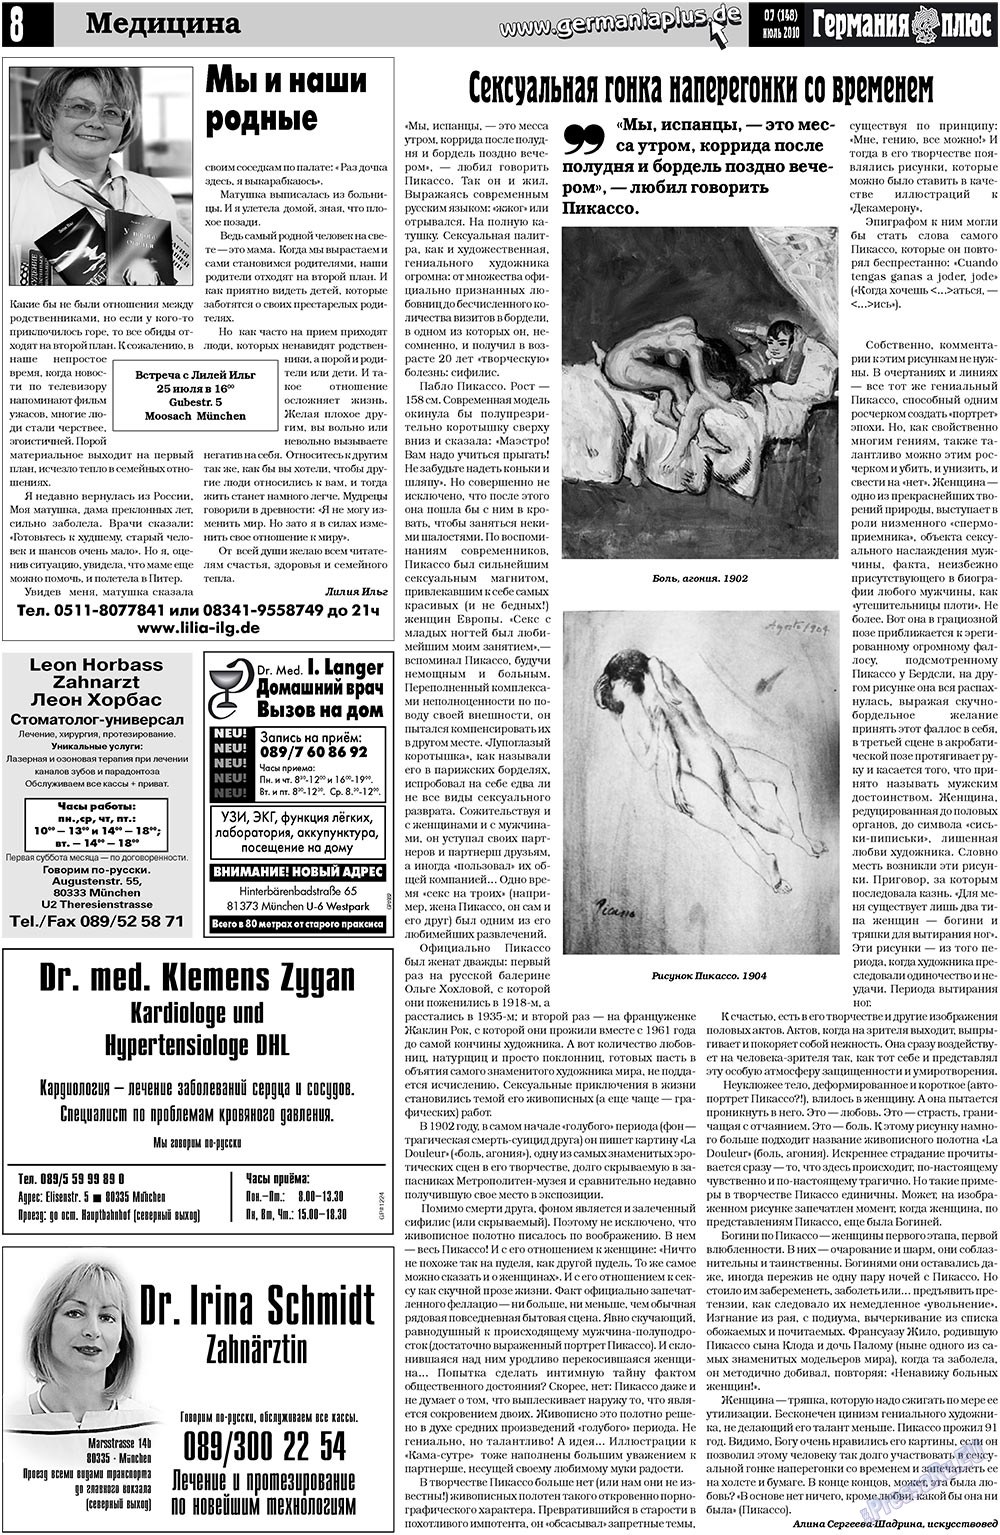 Германия плюс (газета). 2010 год, номер 7, стр. 8